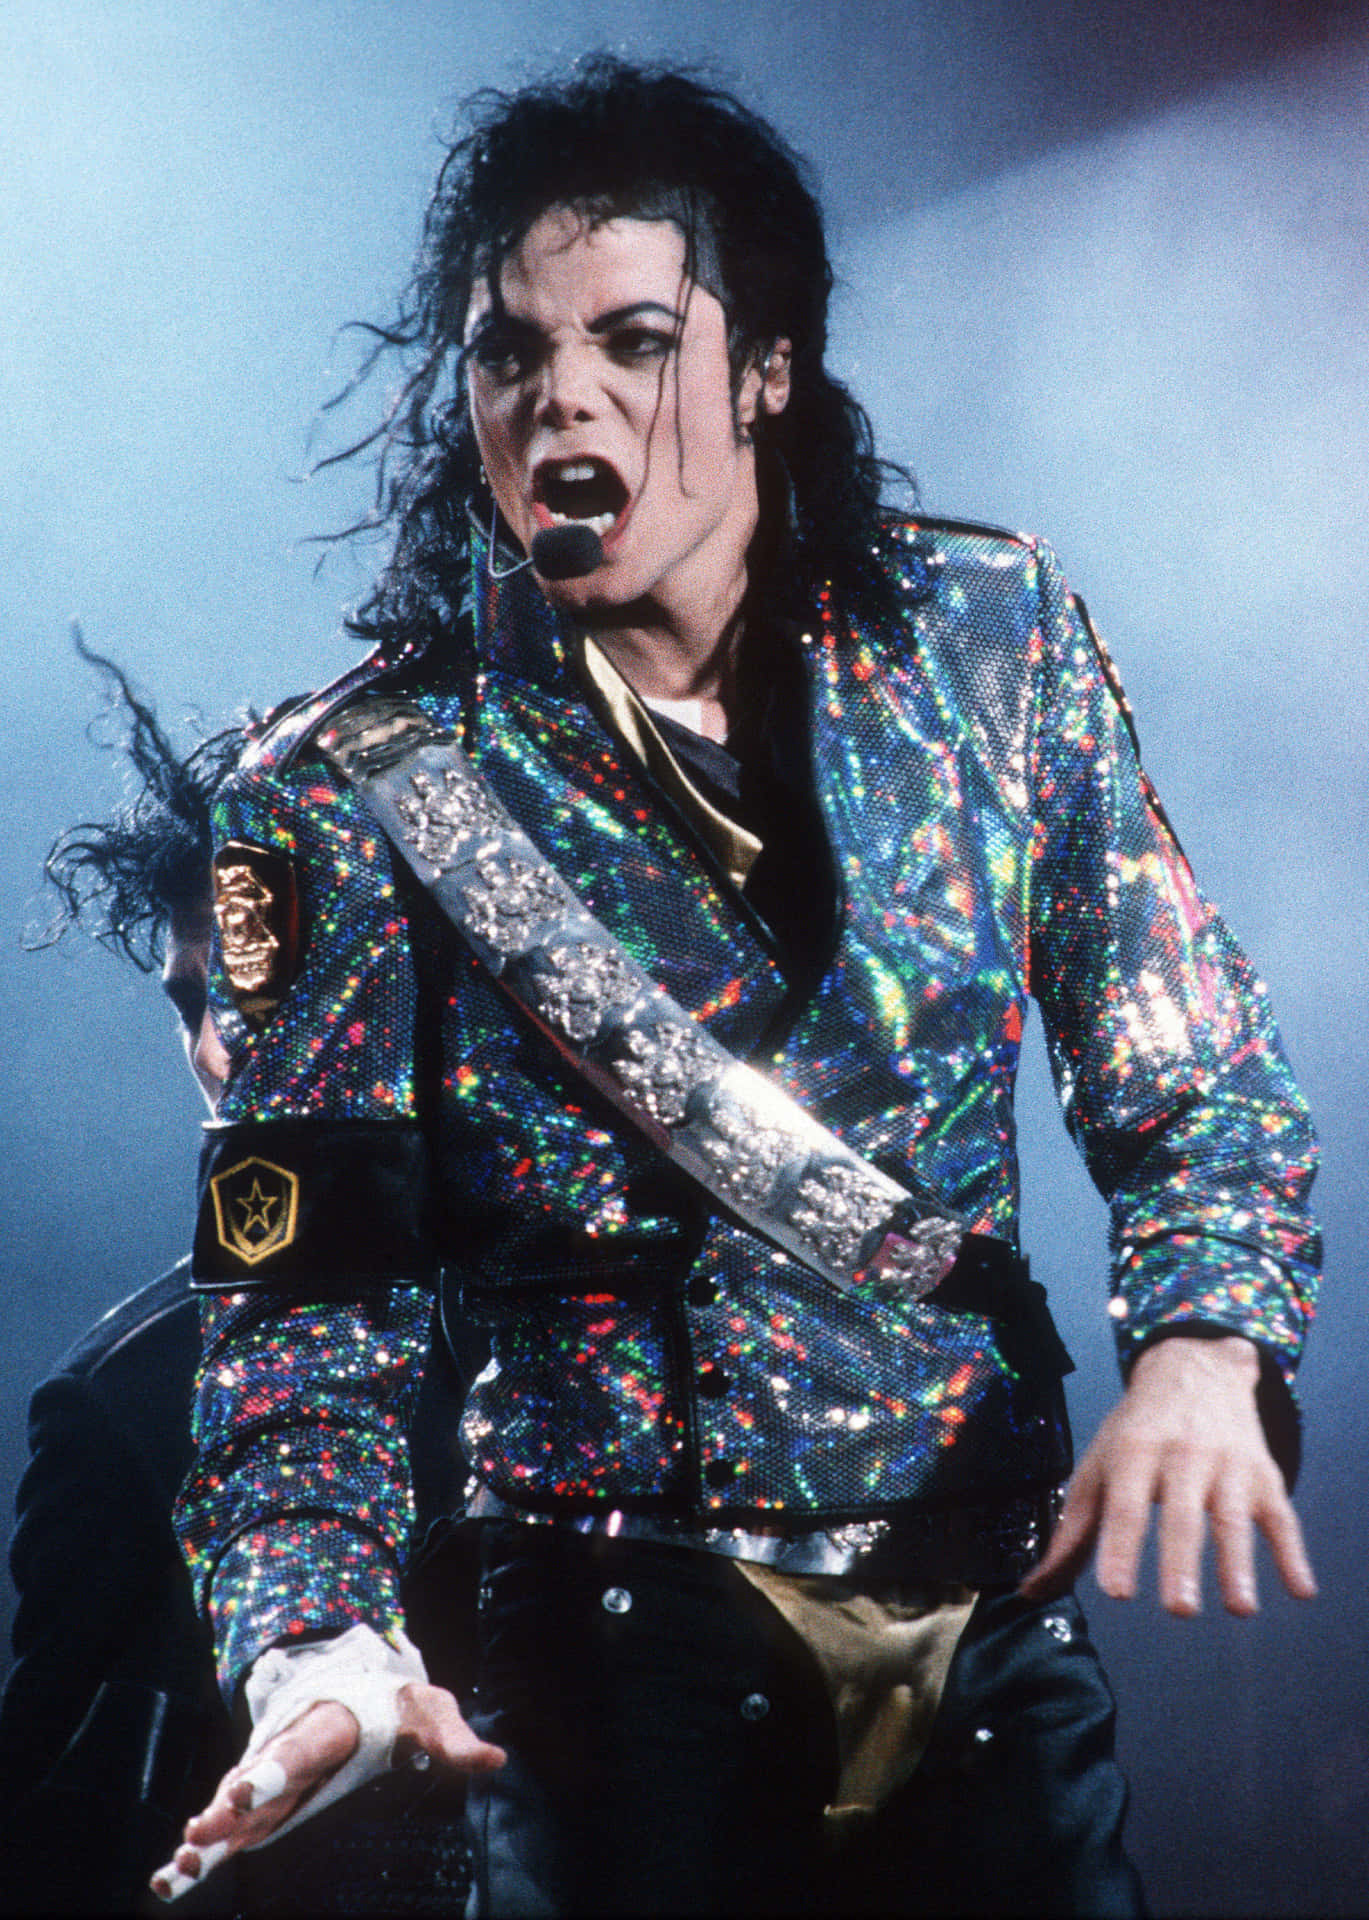 Imágenesde Michael Jackson